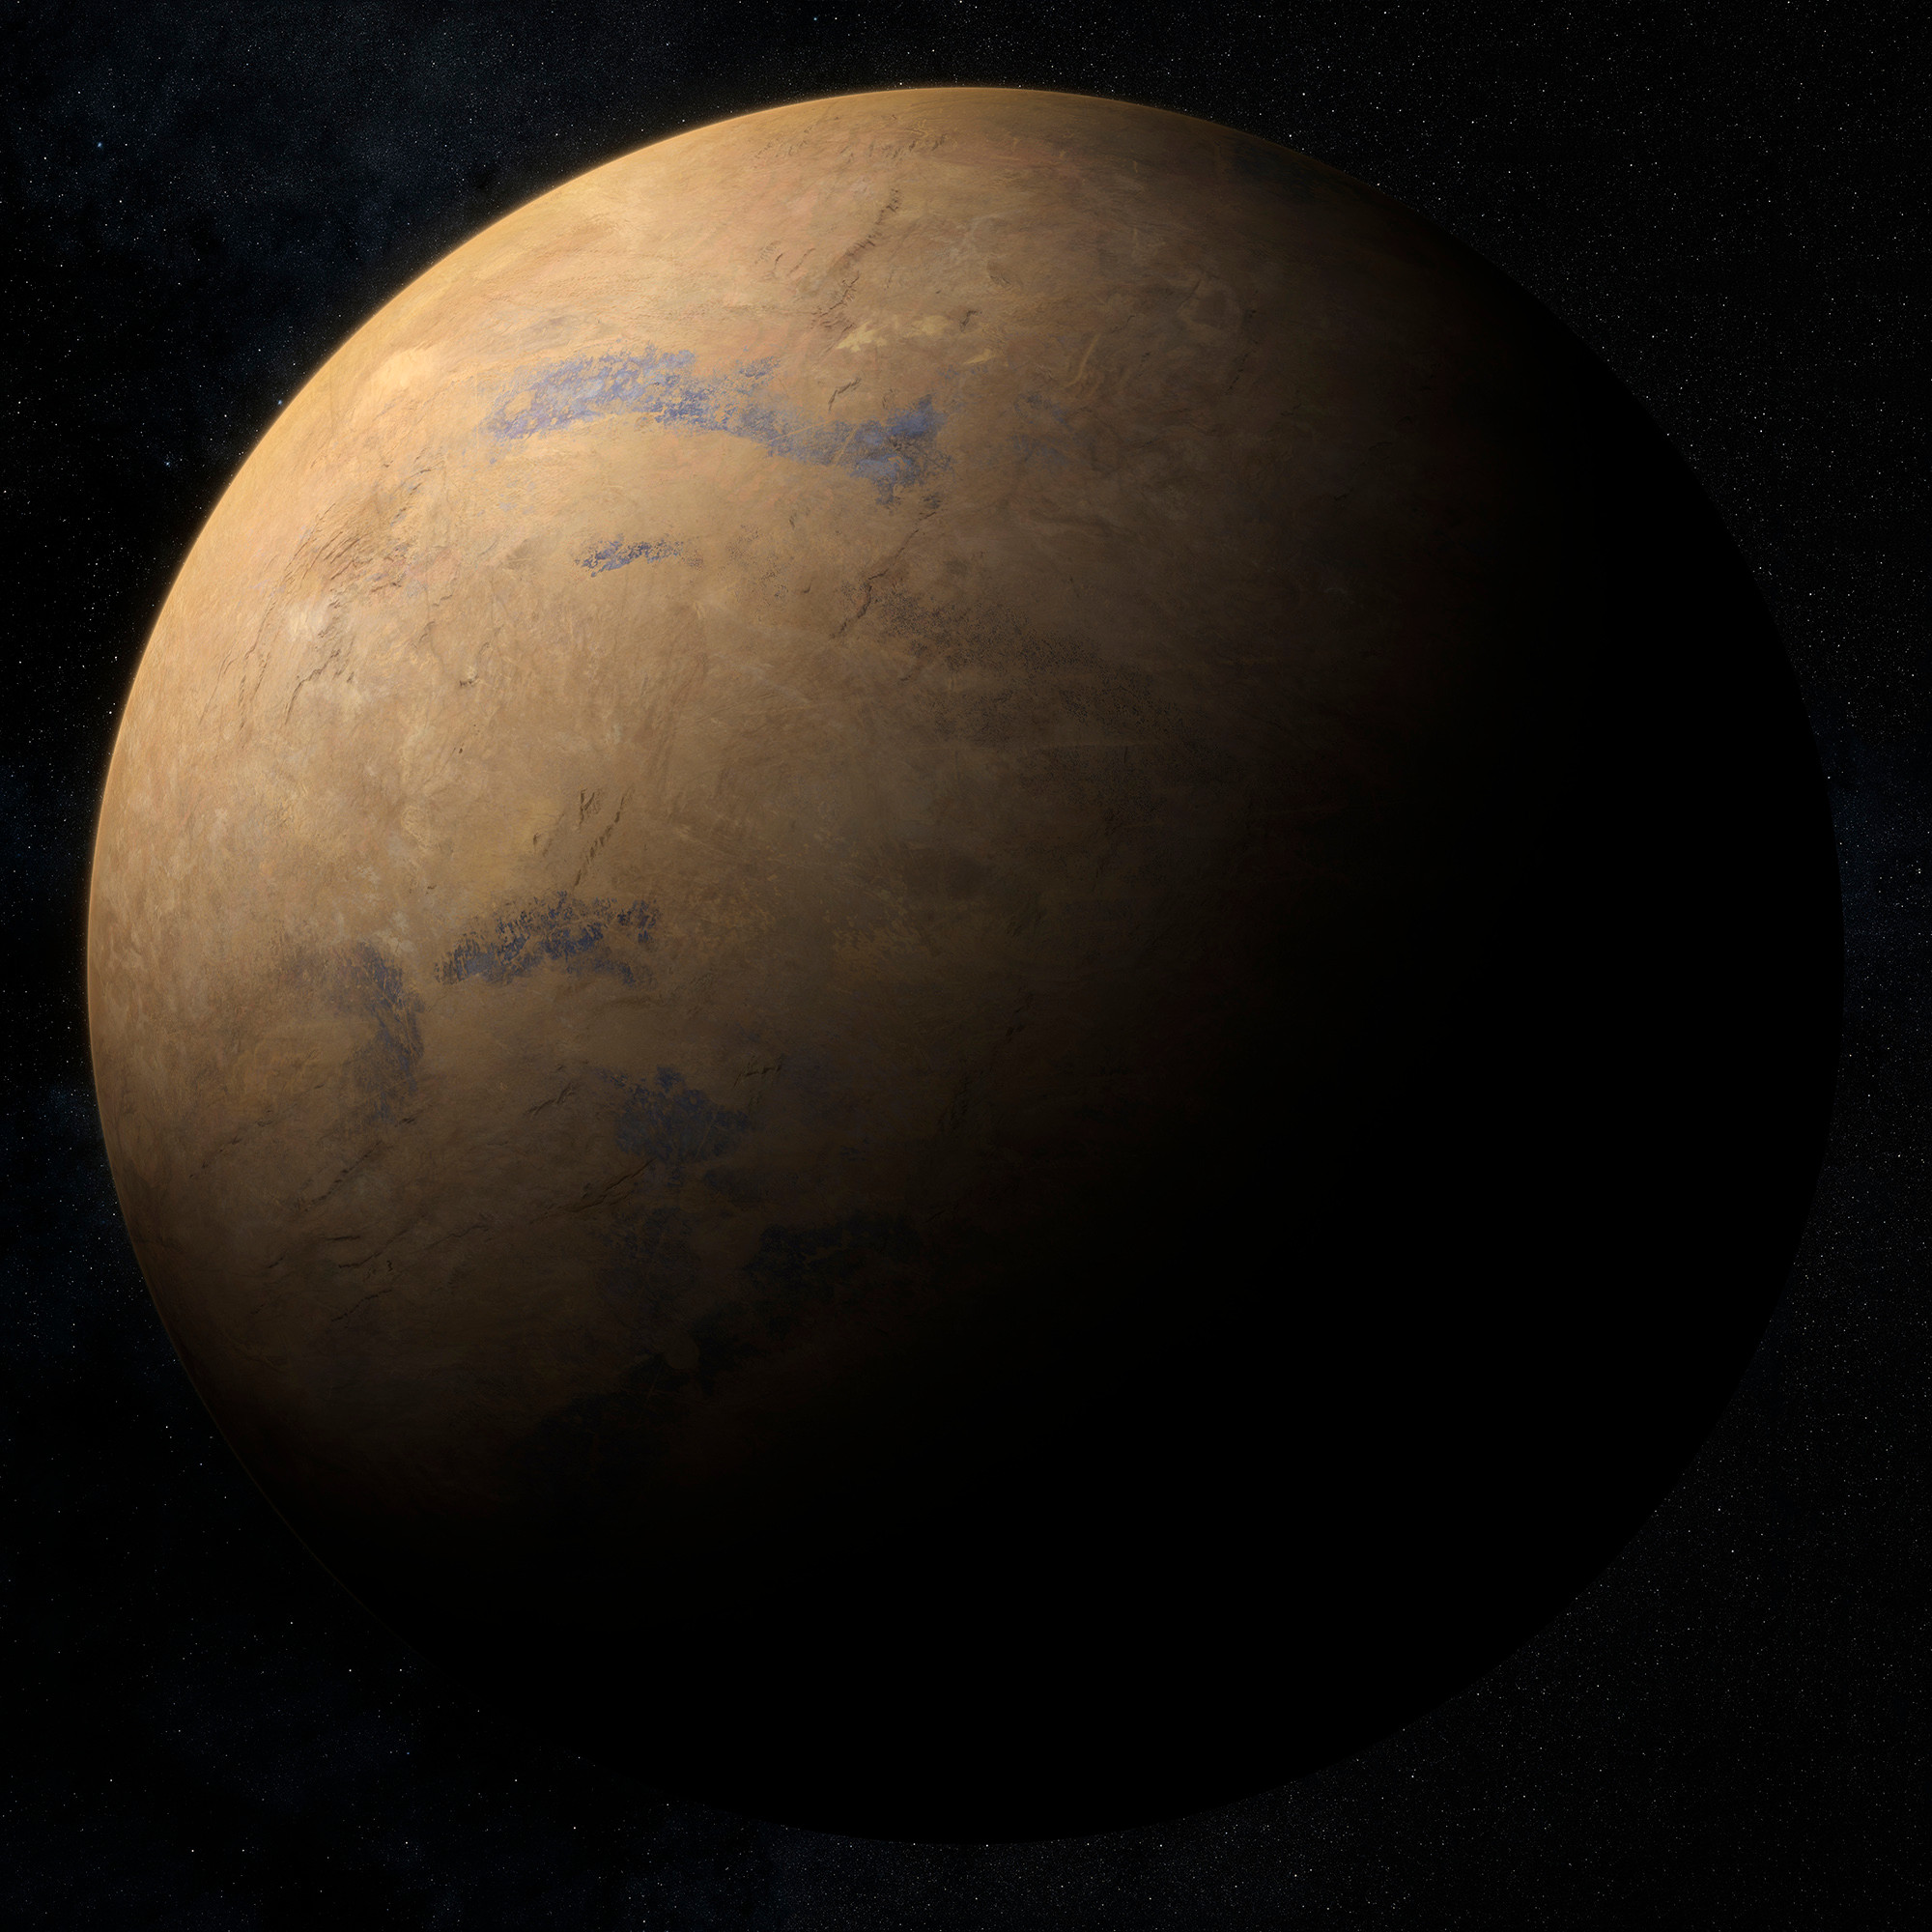 'The Orville' : 'New Horizons' - Planets
'Planet Desert'